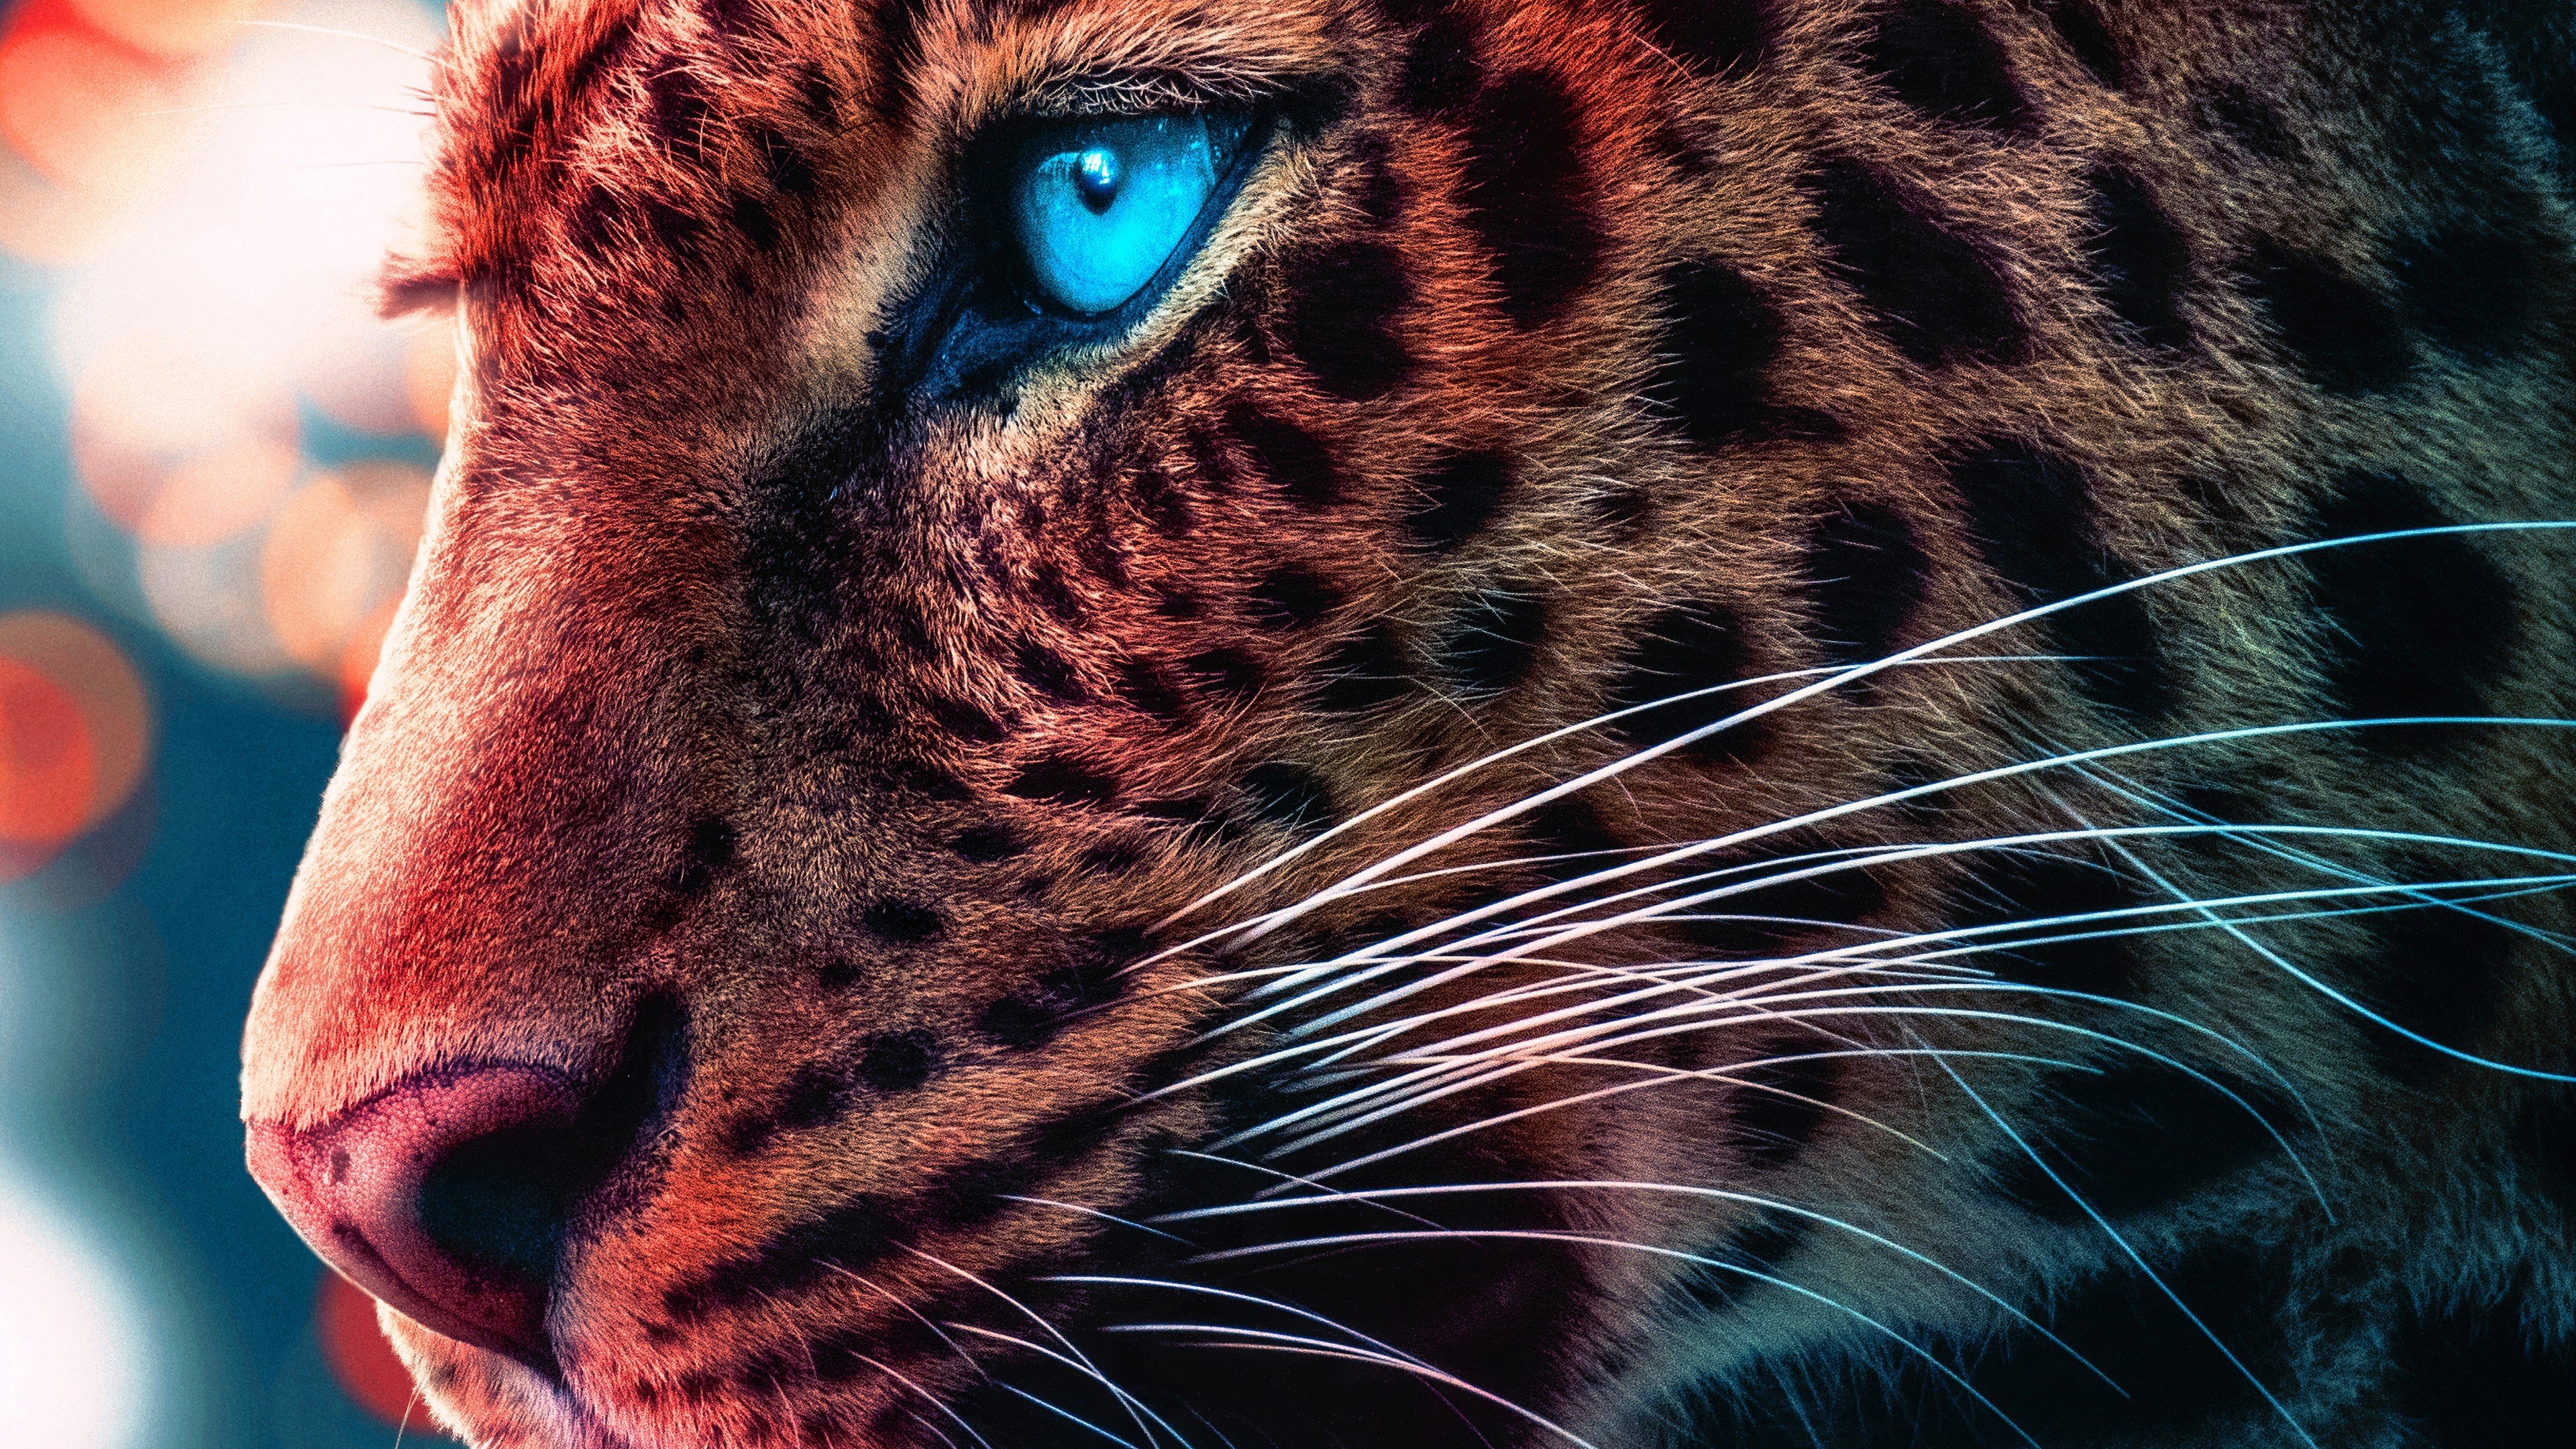 Гепард с голубыми глазами